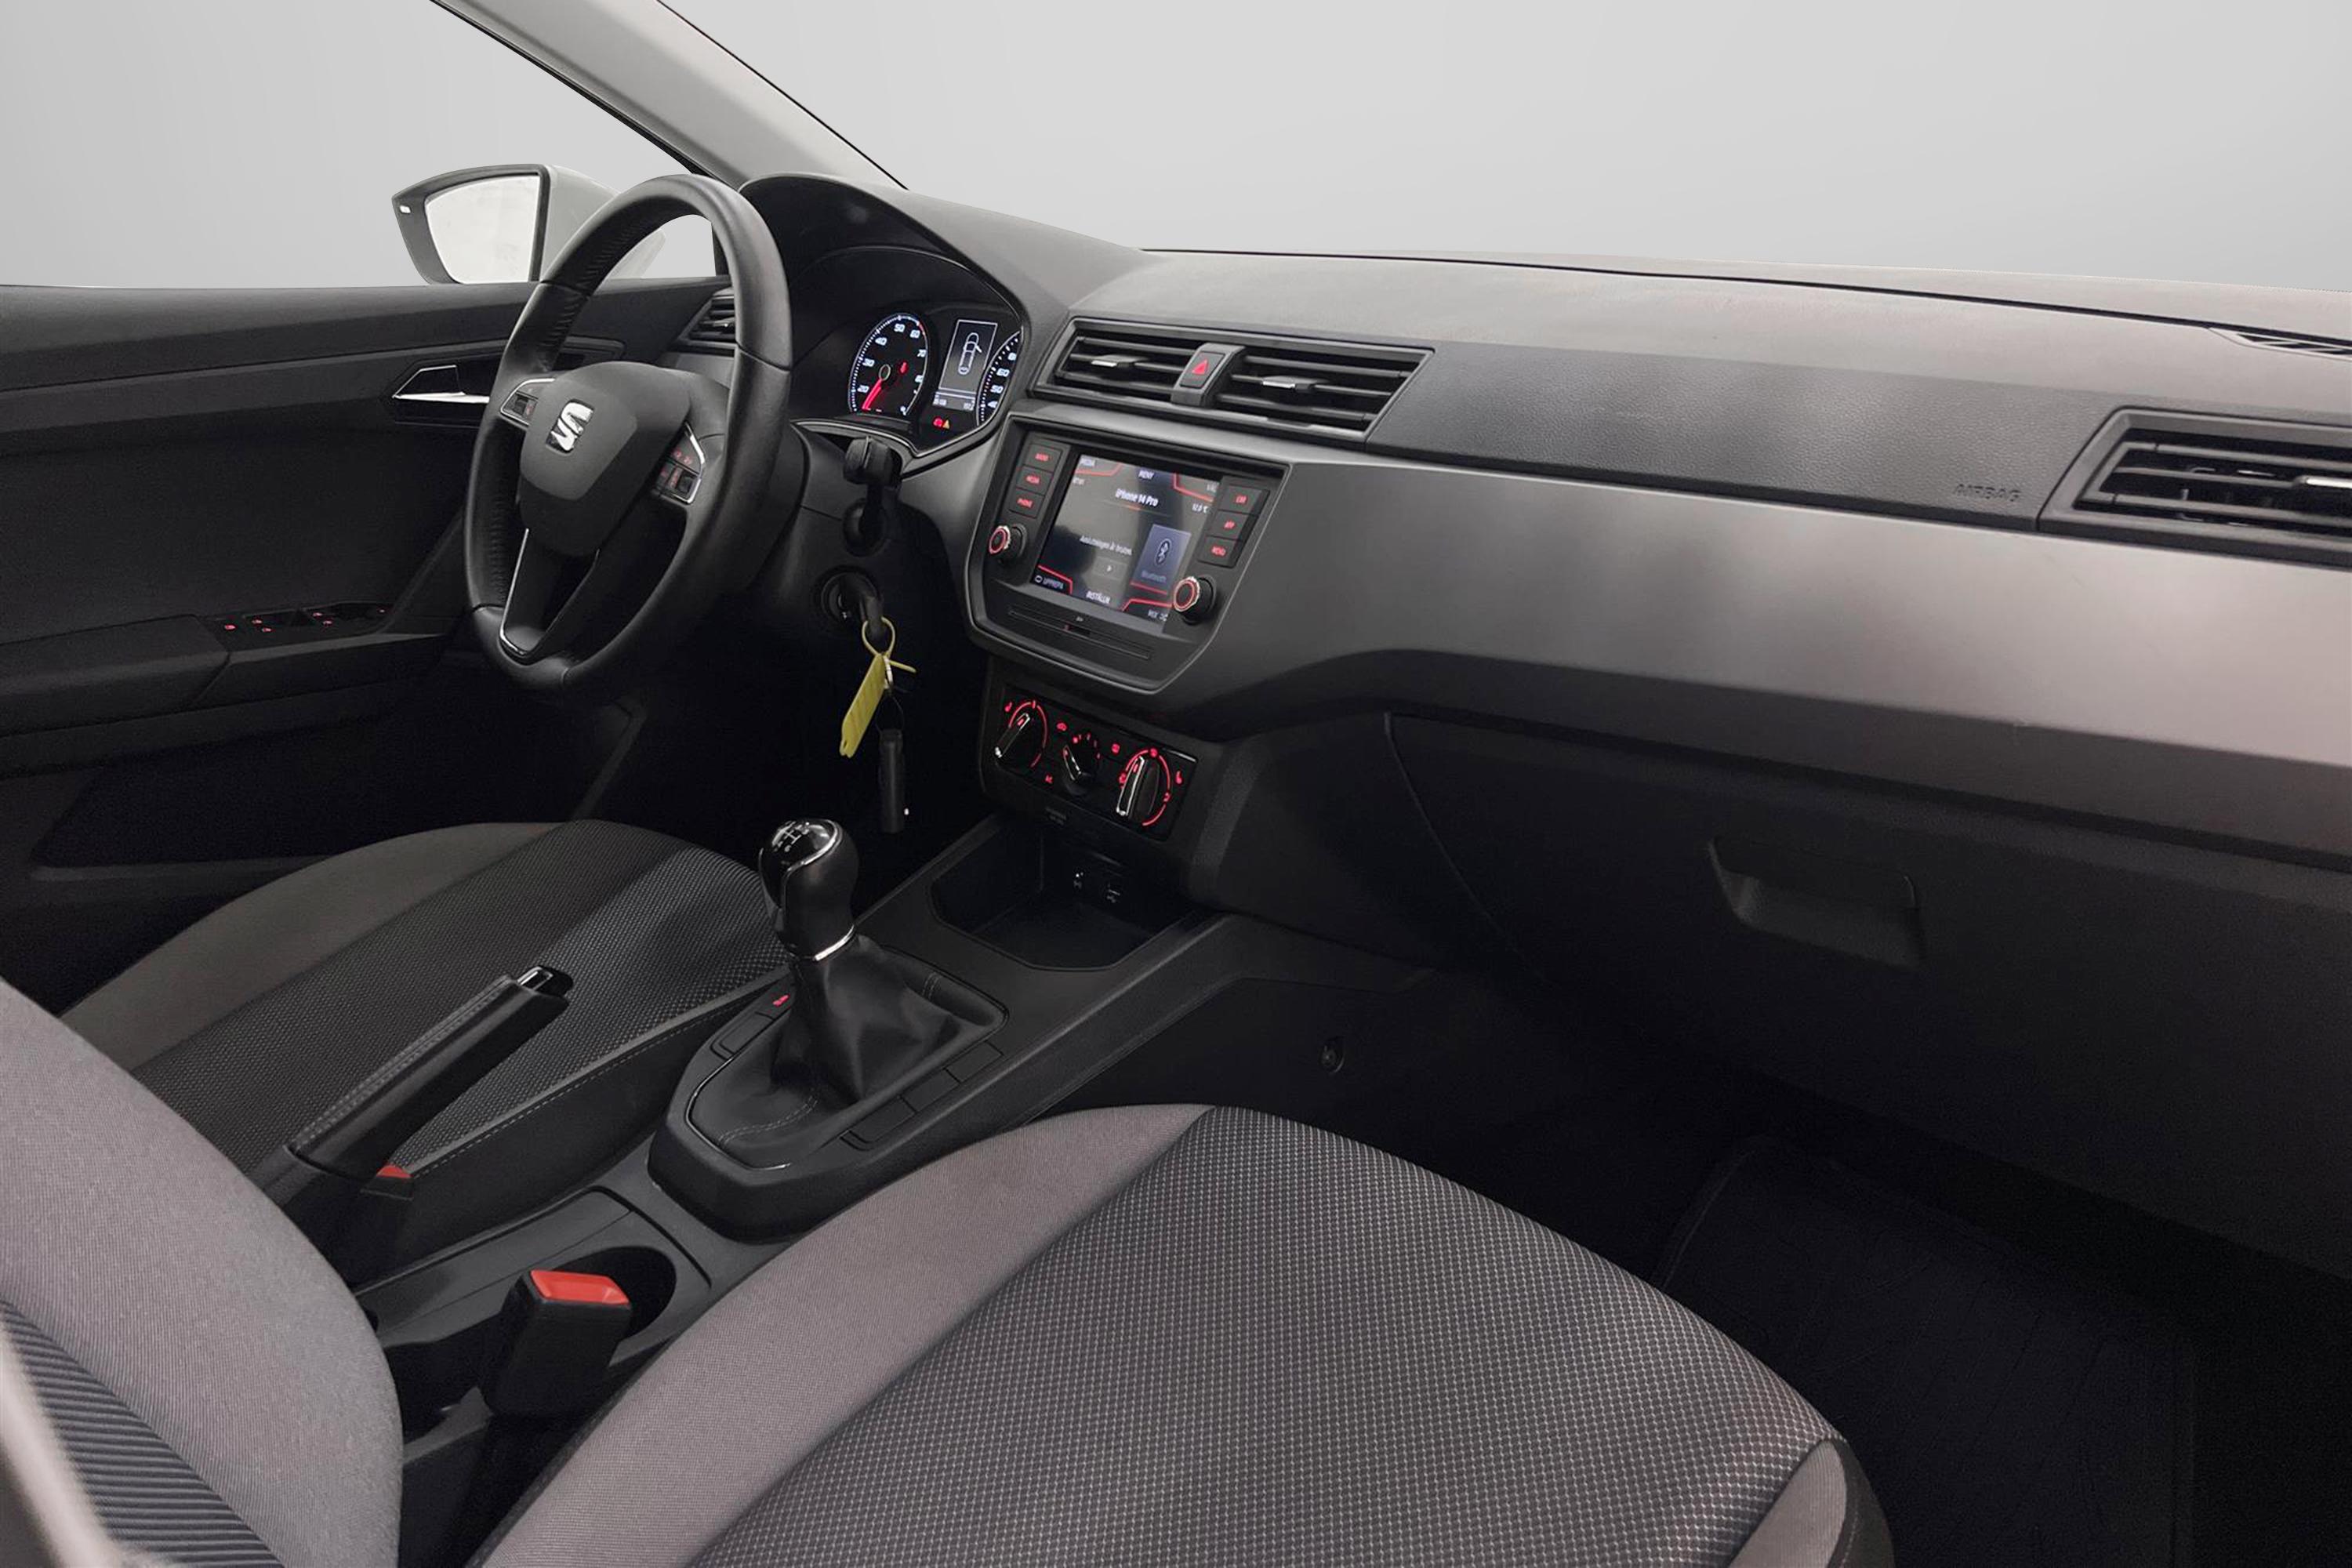 SEAT Ibiza 1.0 TGI 90hk Välservad Låg Skatt 0,39l/mil MOMS